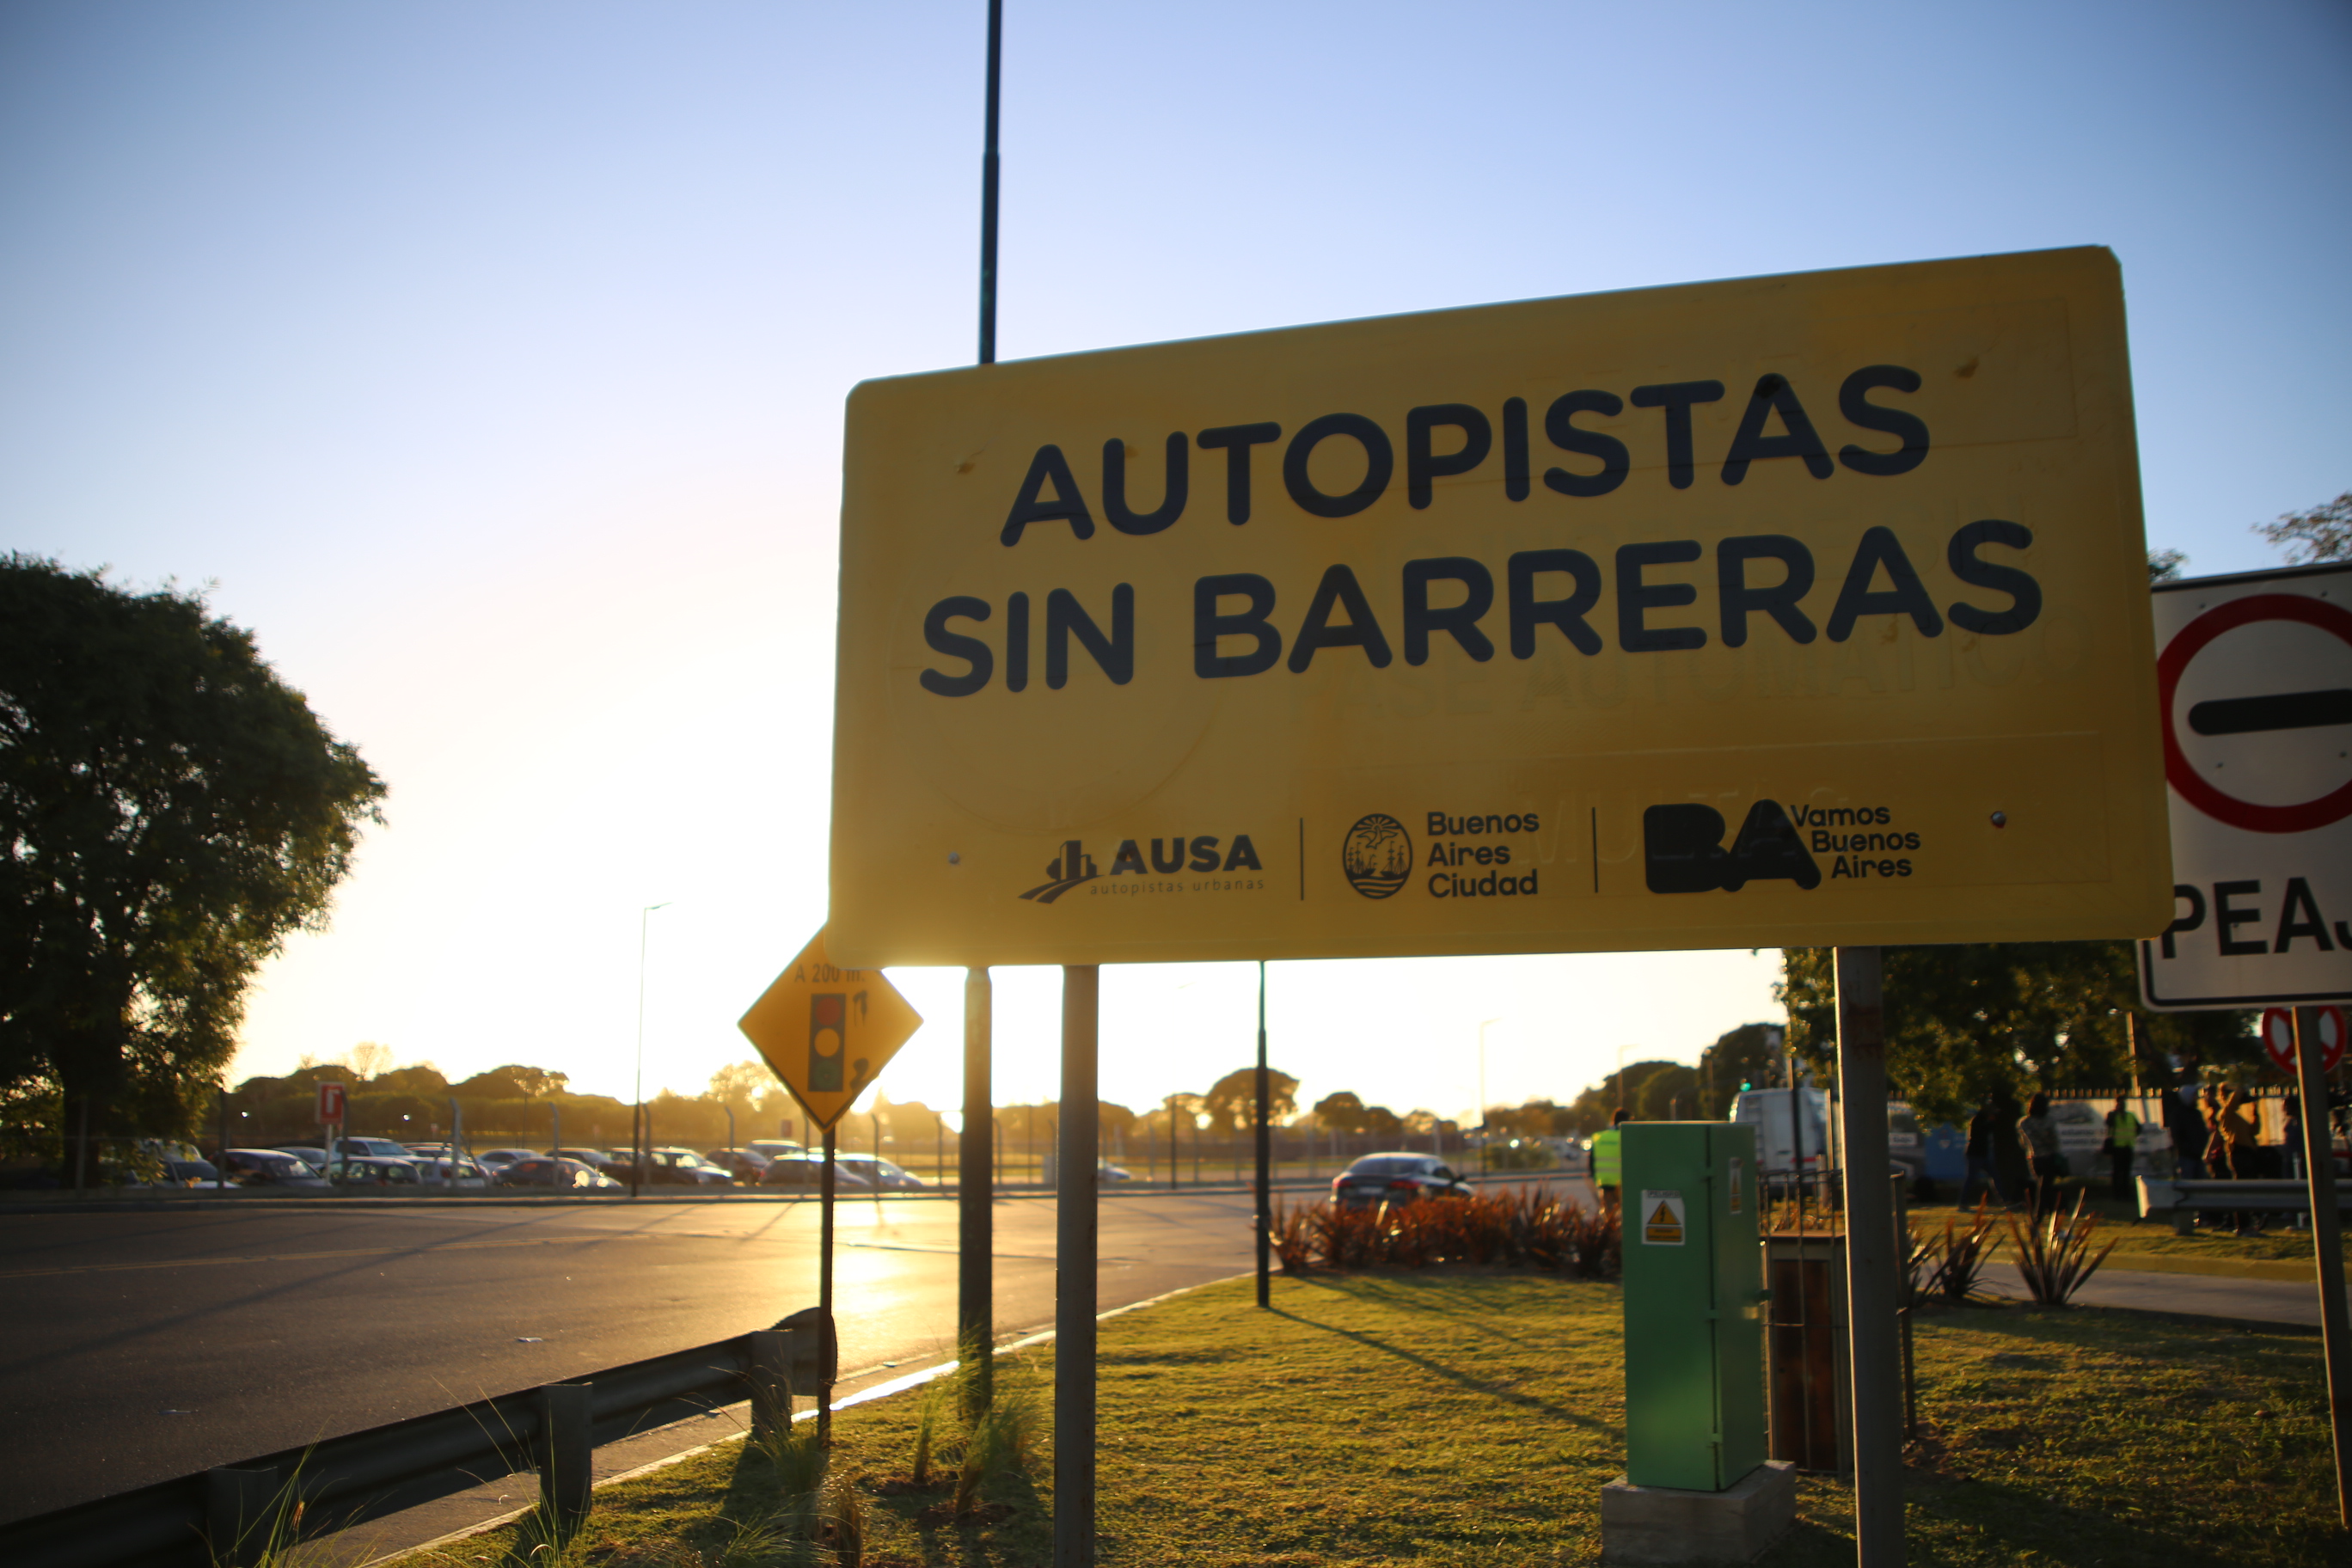 Presentación del sistema "Autopistas sin barreras"